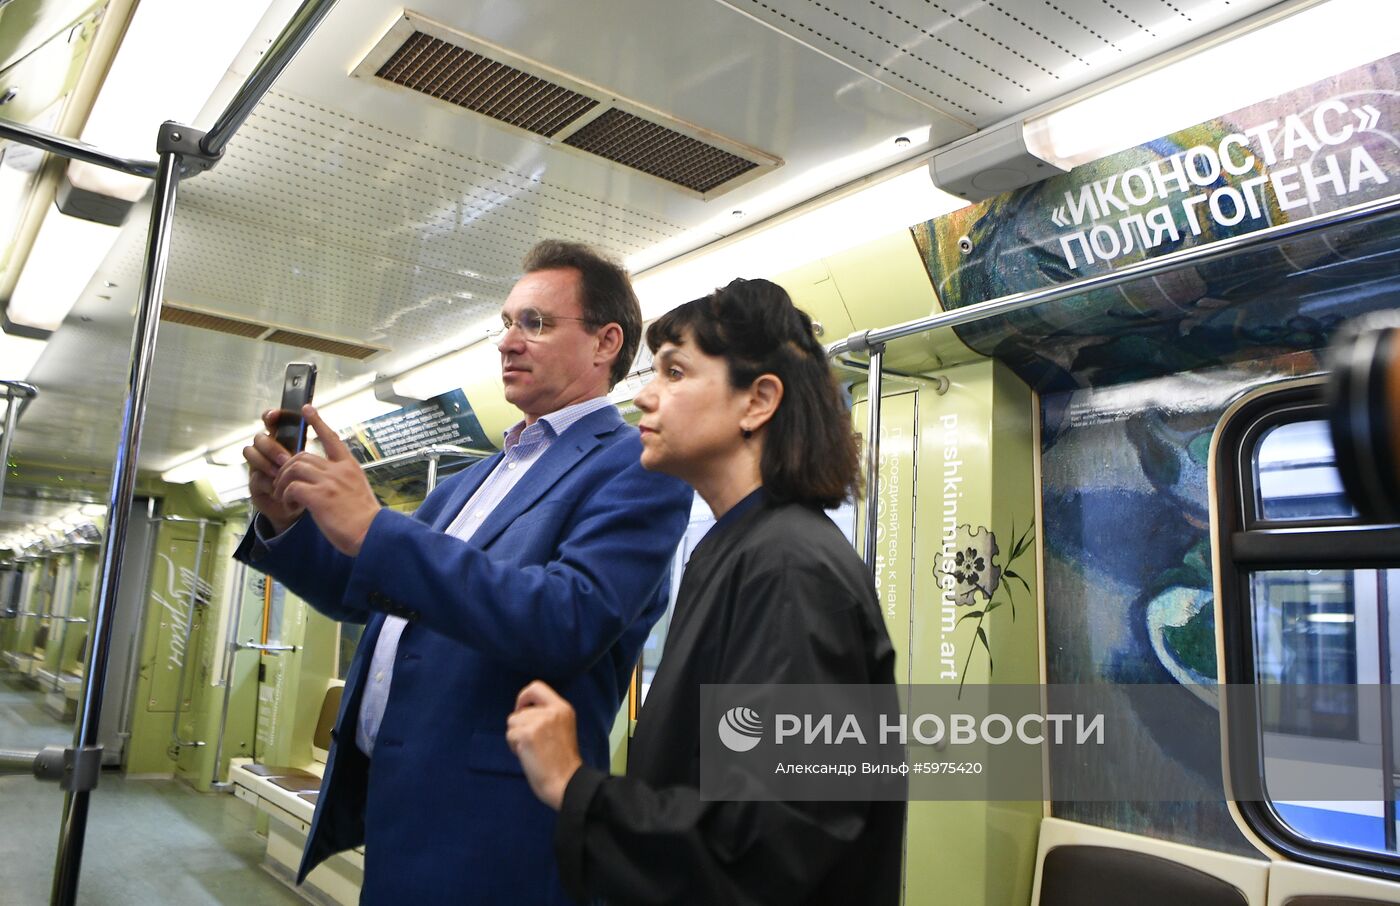 Запуск поезда метро, посвященного выставке "Щукин. Биография коллекции"